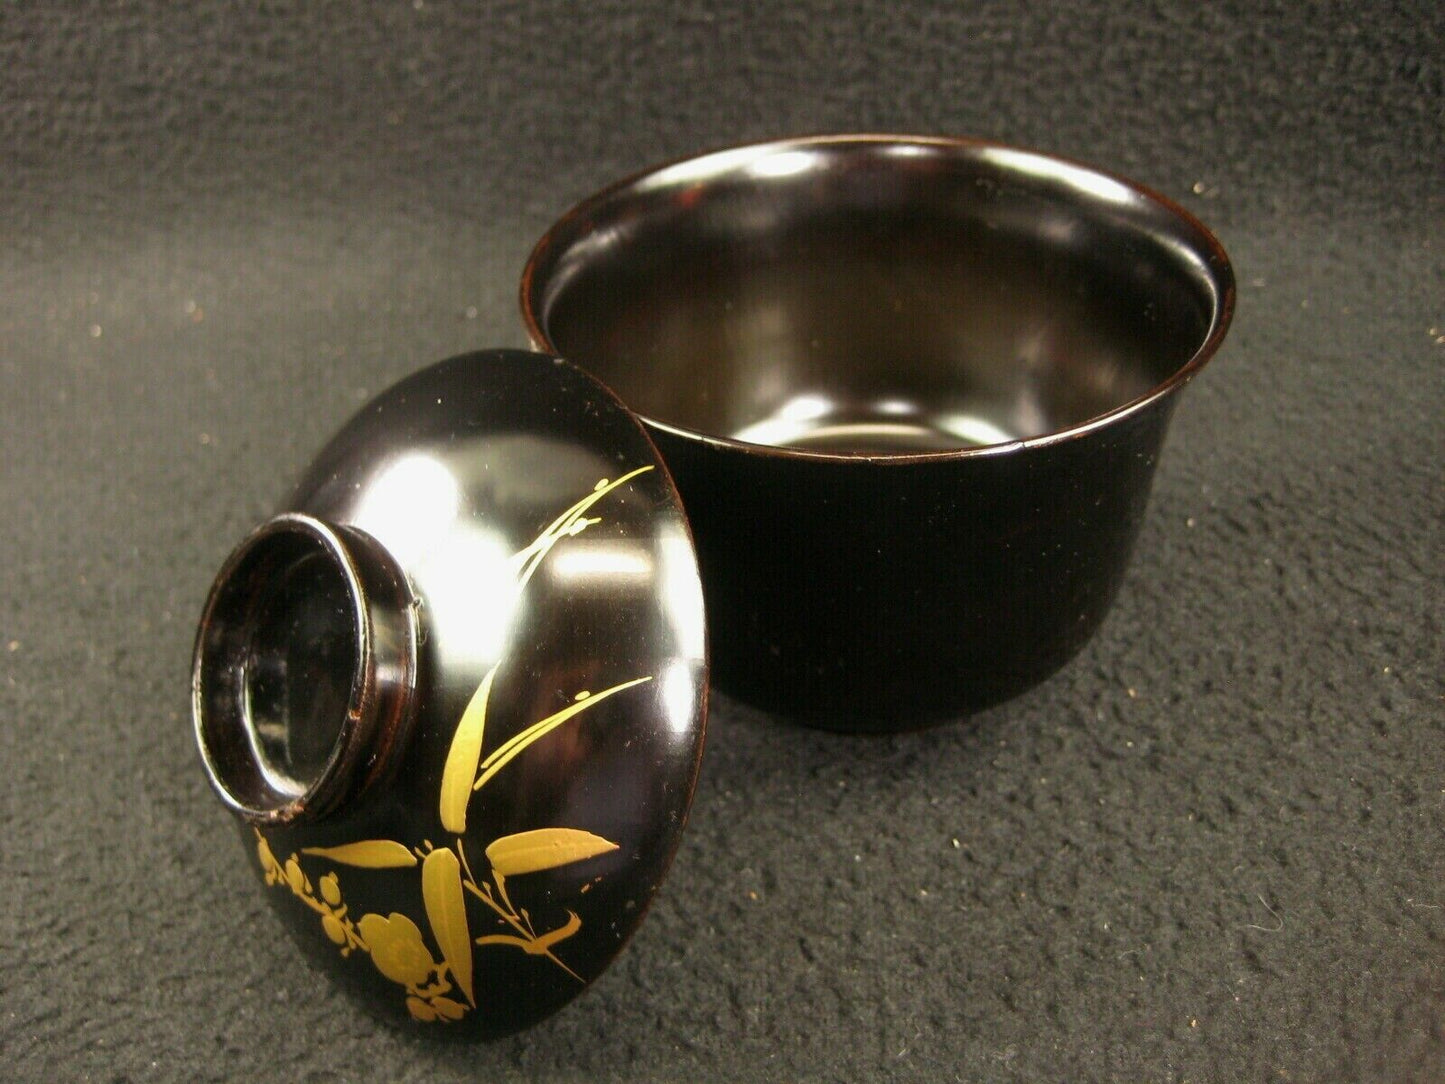 Antique Japanese Meiji Era (C.1900) Black Lacquer Lidded Soup Bowl Gold Makie